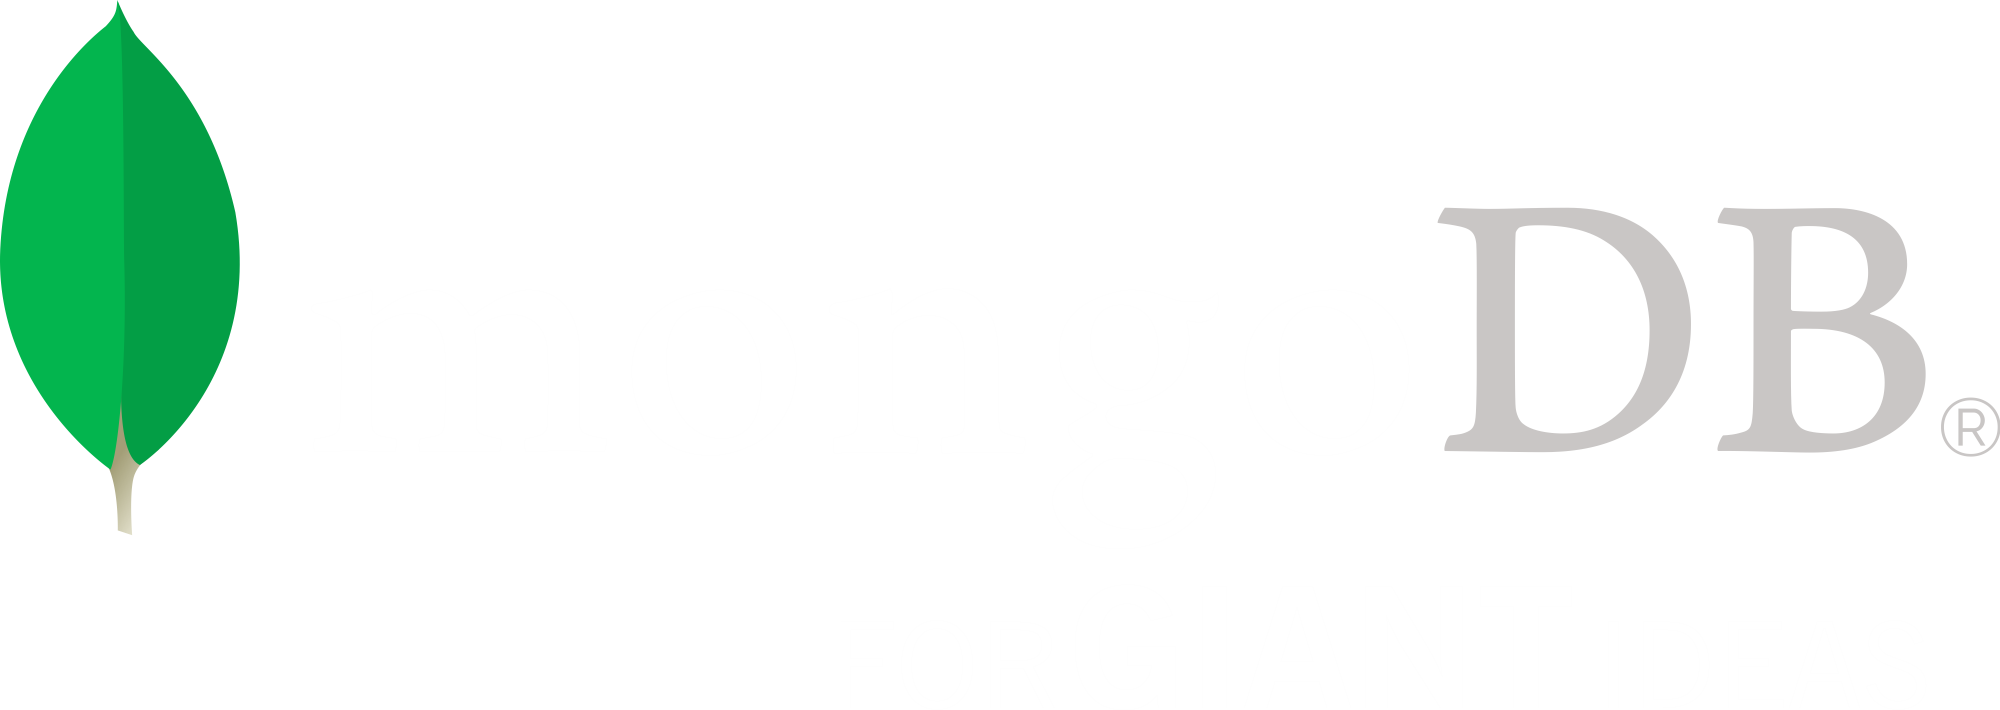 Mongodb PNG - 106989